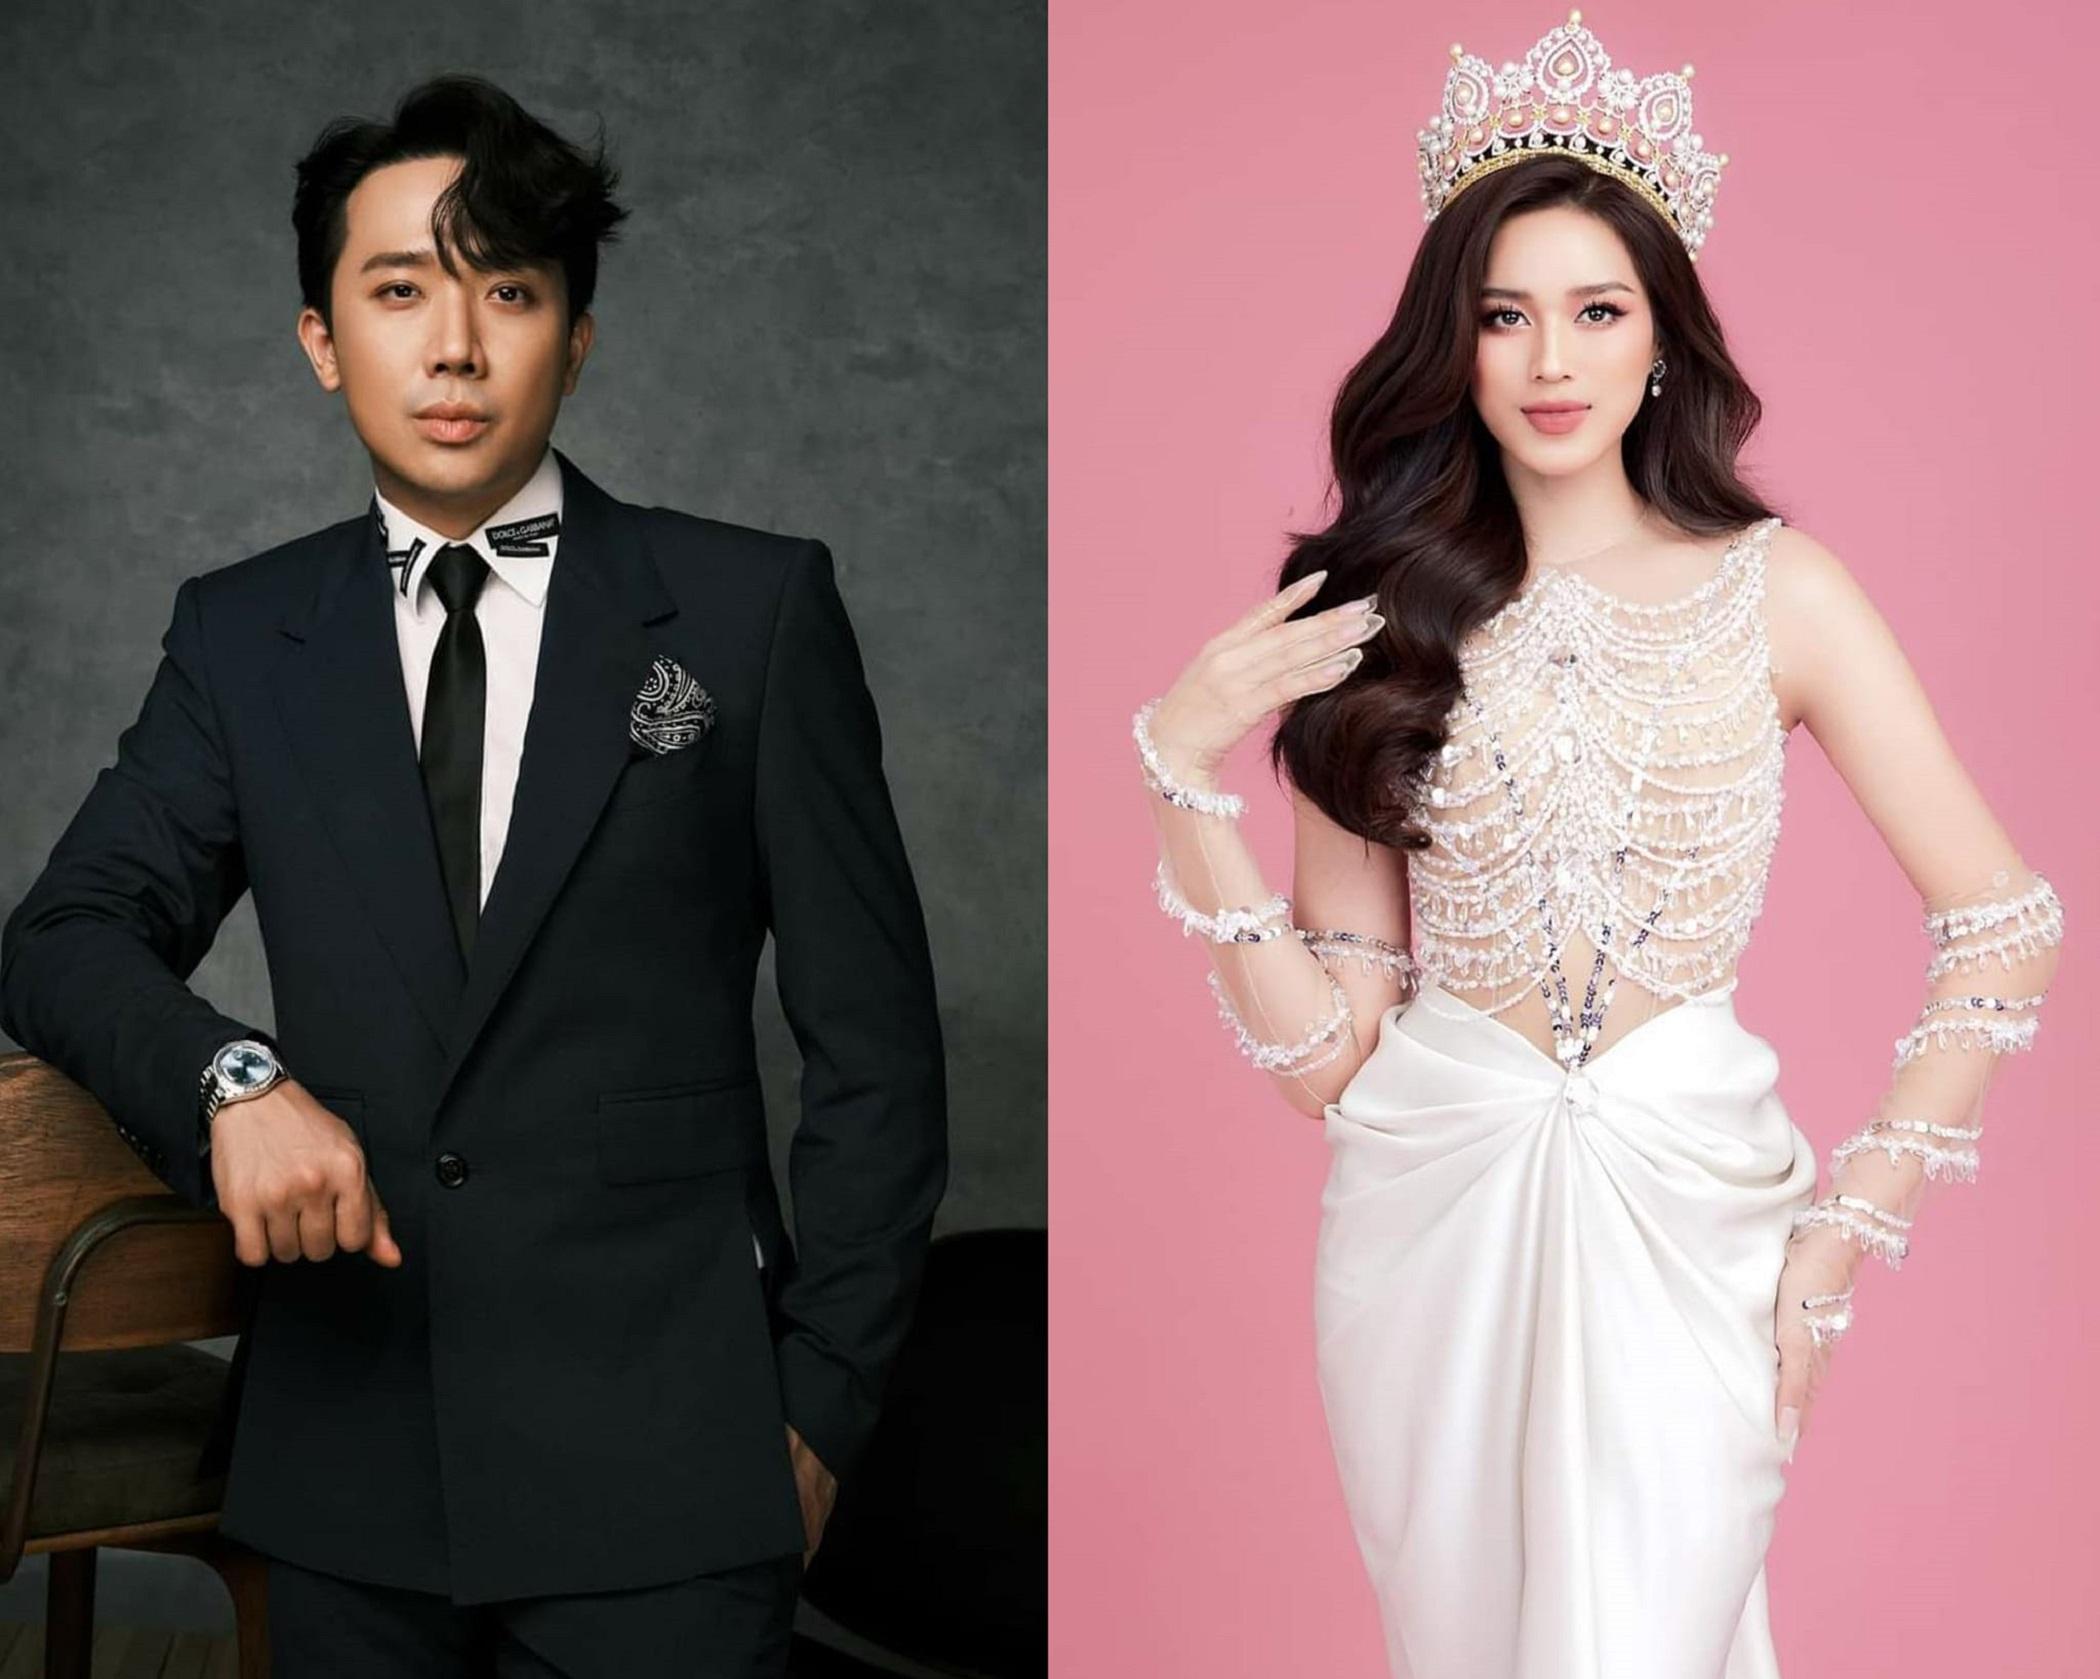 Hé lộ ảnh cưới của Trấn Thành trong phim Tết, Đỗ Thị Hà tiếc nuối trong nhiệm kỳ làm Hoa hậu?